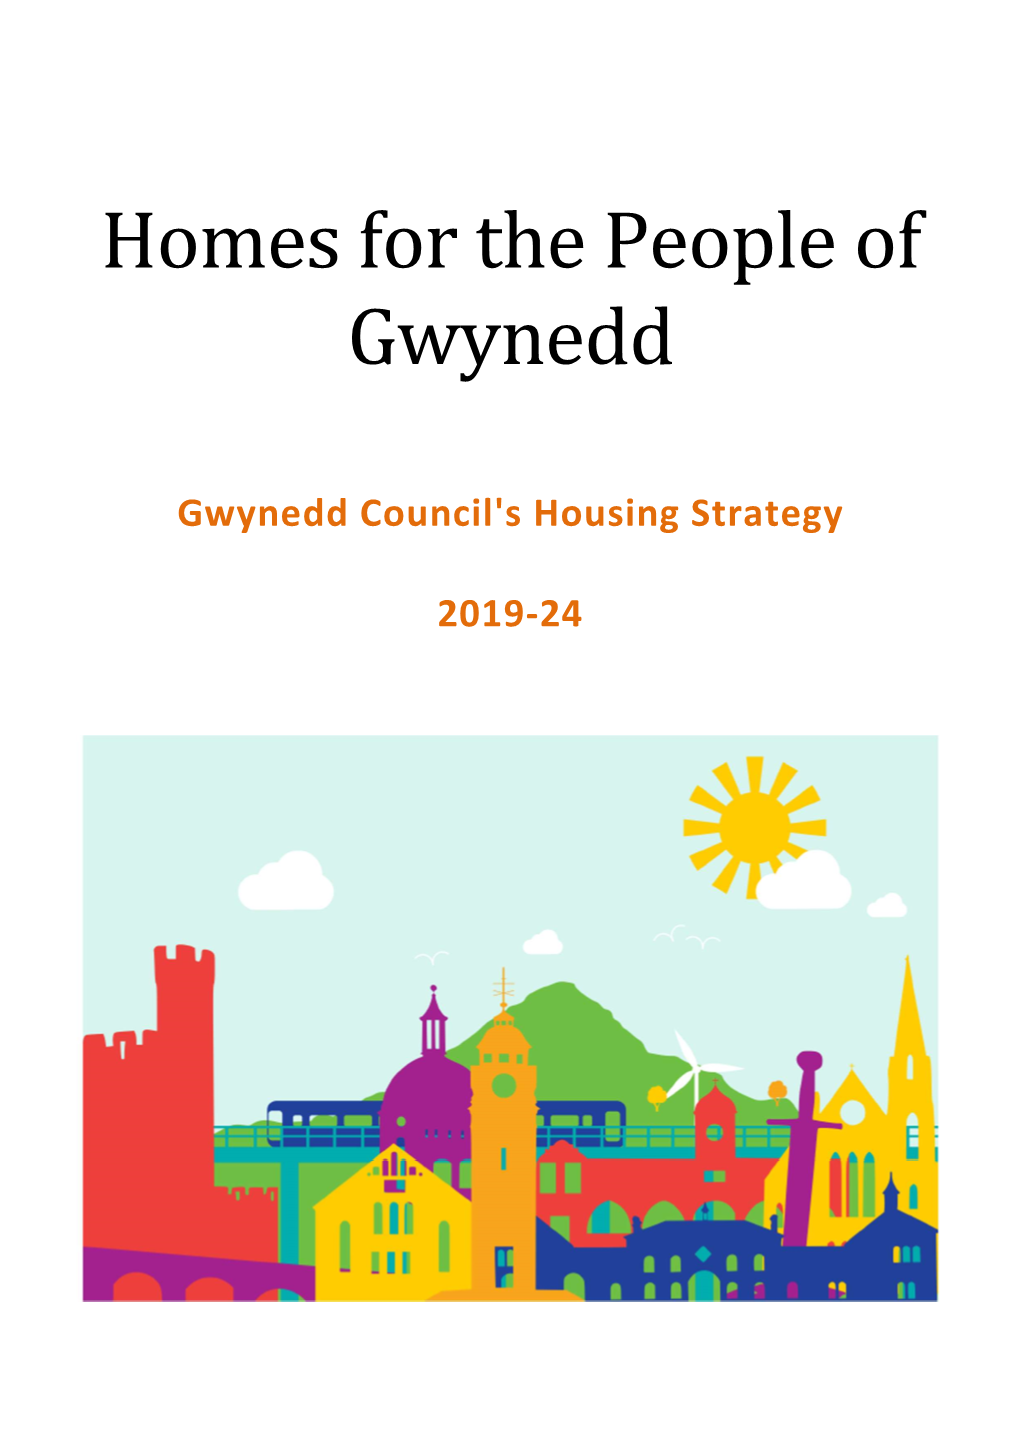 Gwynedd Council's Housing Strategy 2019-24